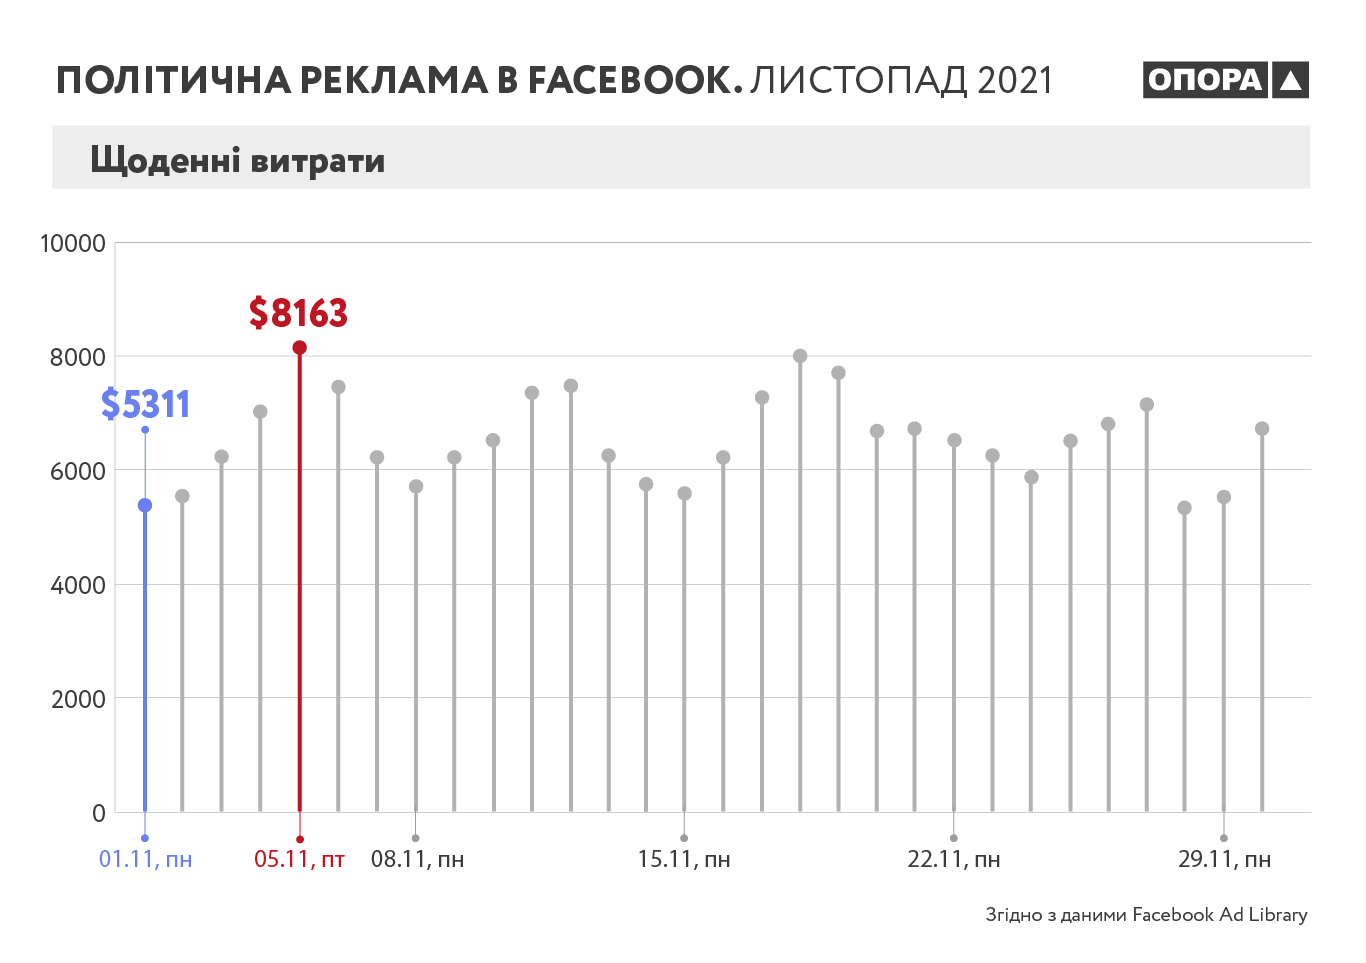 Кто из украинских политиков тратит больше всех на рекламу в Facebook  - фото 2